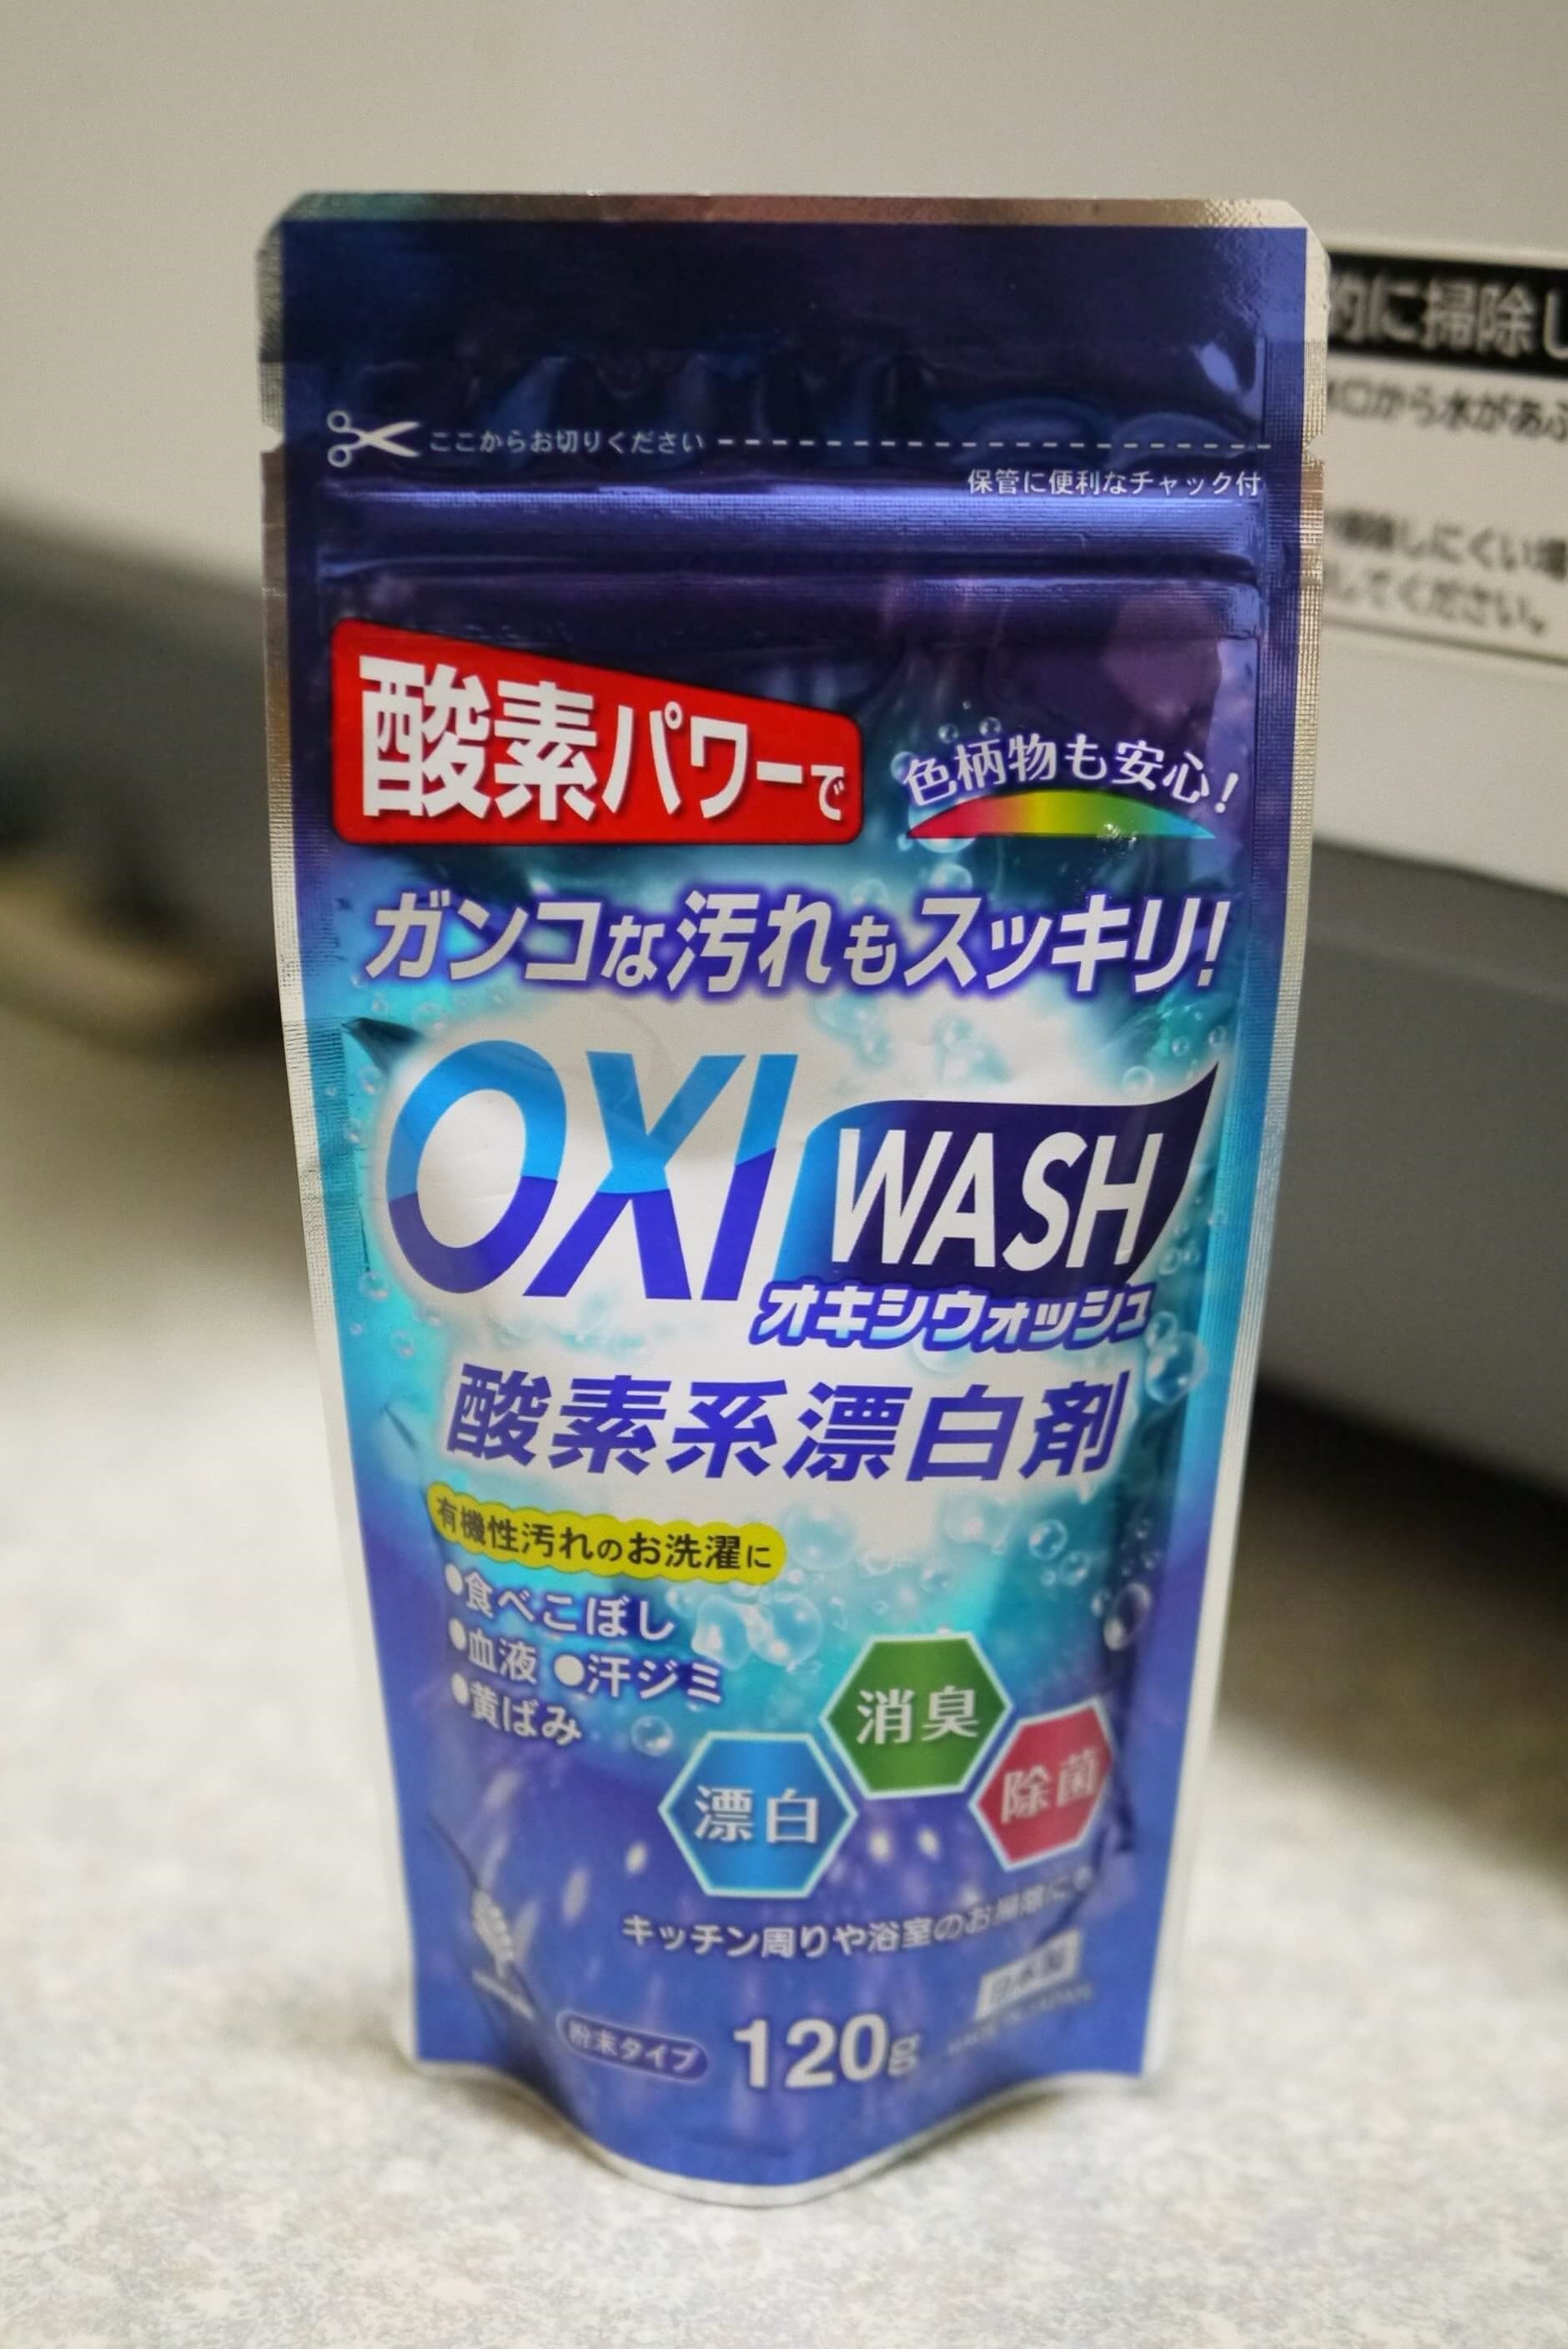 SET 02 gói bột tẩy đa năng ( gói  120g ) + 01 gói bột tiêu khử tóc trong đường ống cống nhà tắm,....- Hàng nội địa Nhật Bản.